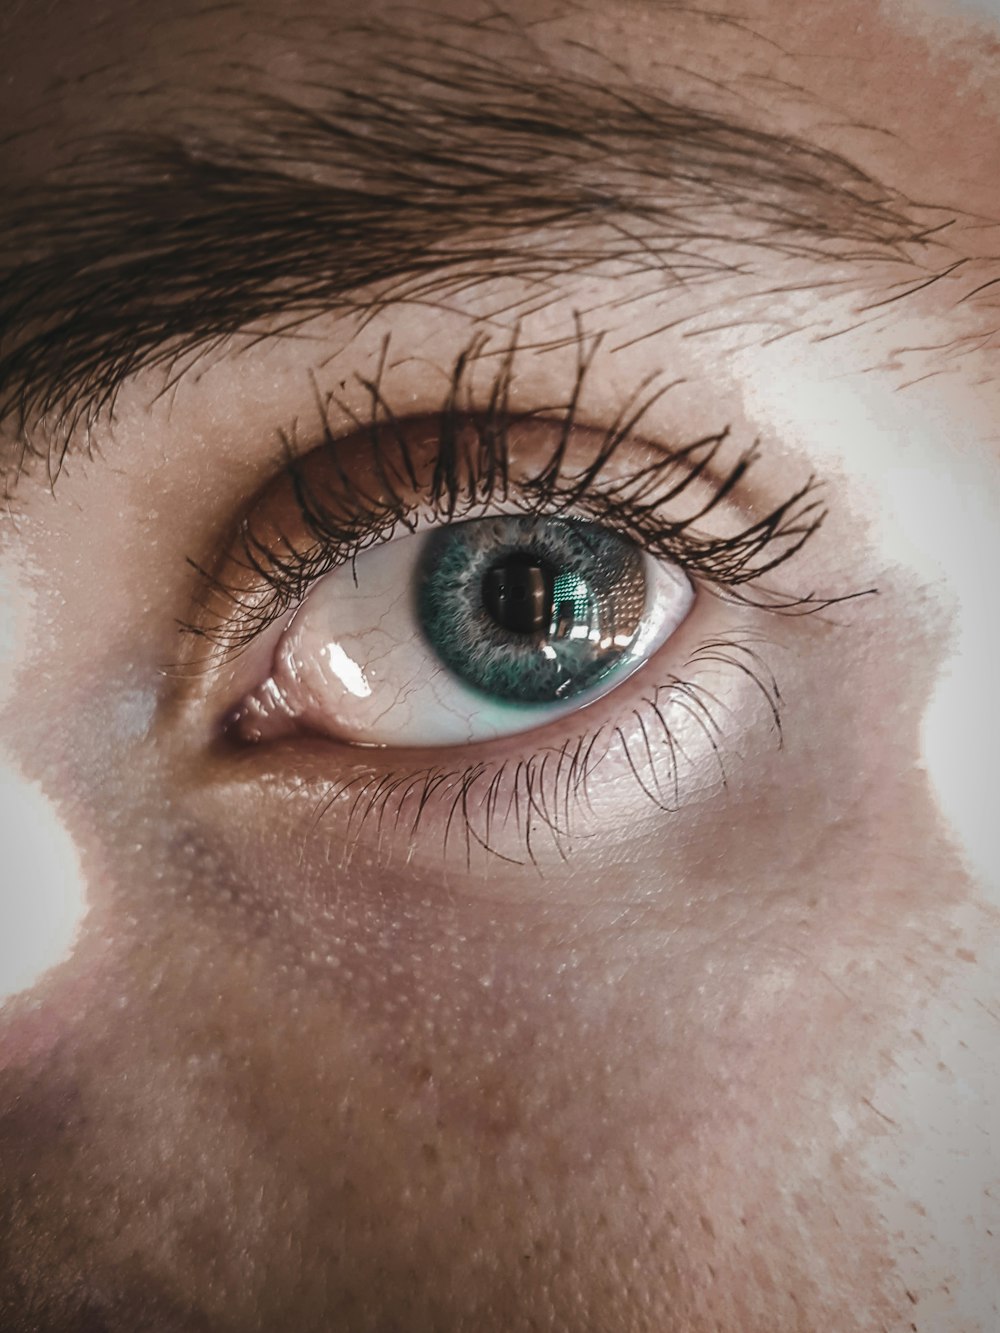 olho humano